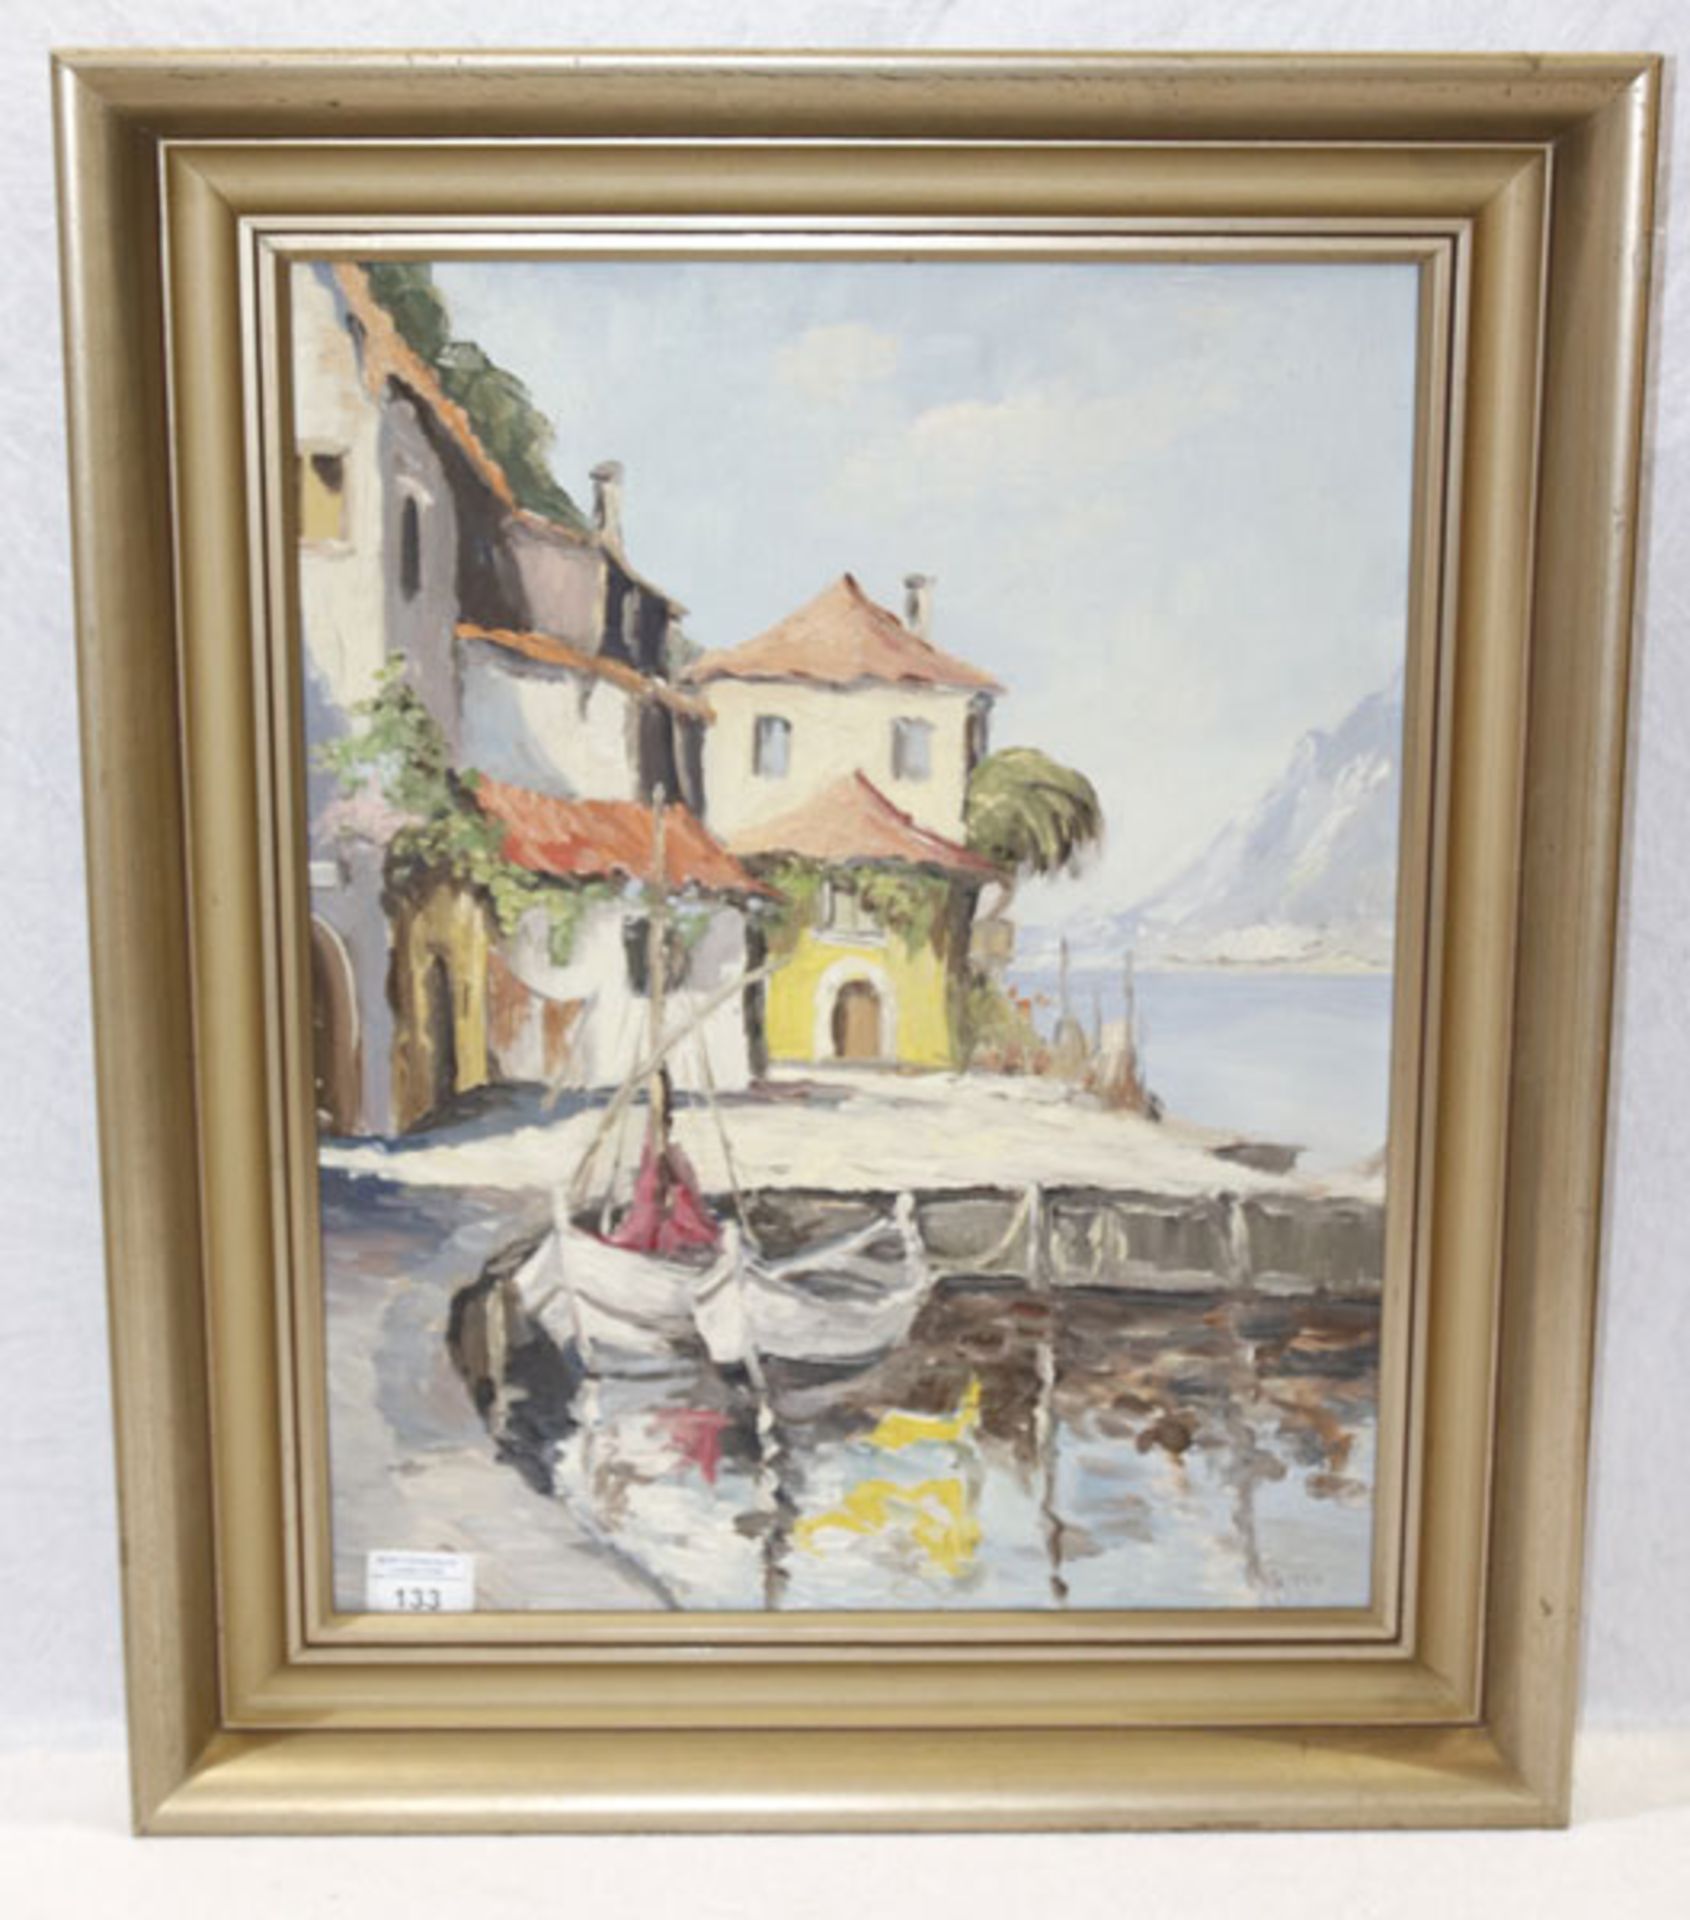 Gemälde ÖL/Hartfaser 'Limone am Gardasee', signiert K. Koppen ?, gerahmt, Rahmen bestossen, incl.